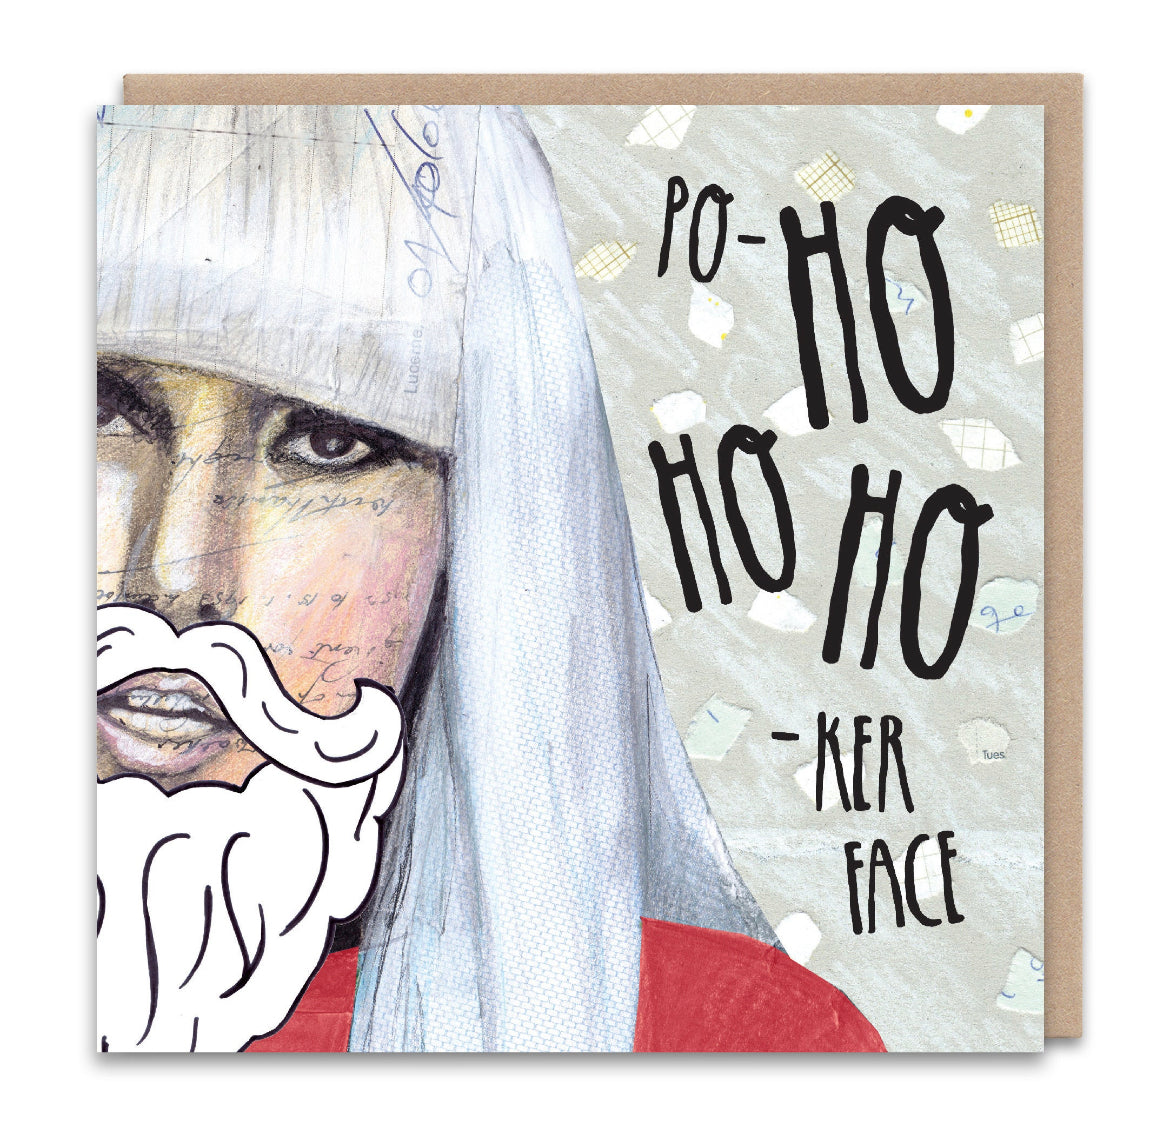 HO HO HO Ker Face Christmas Card